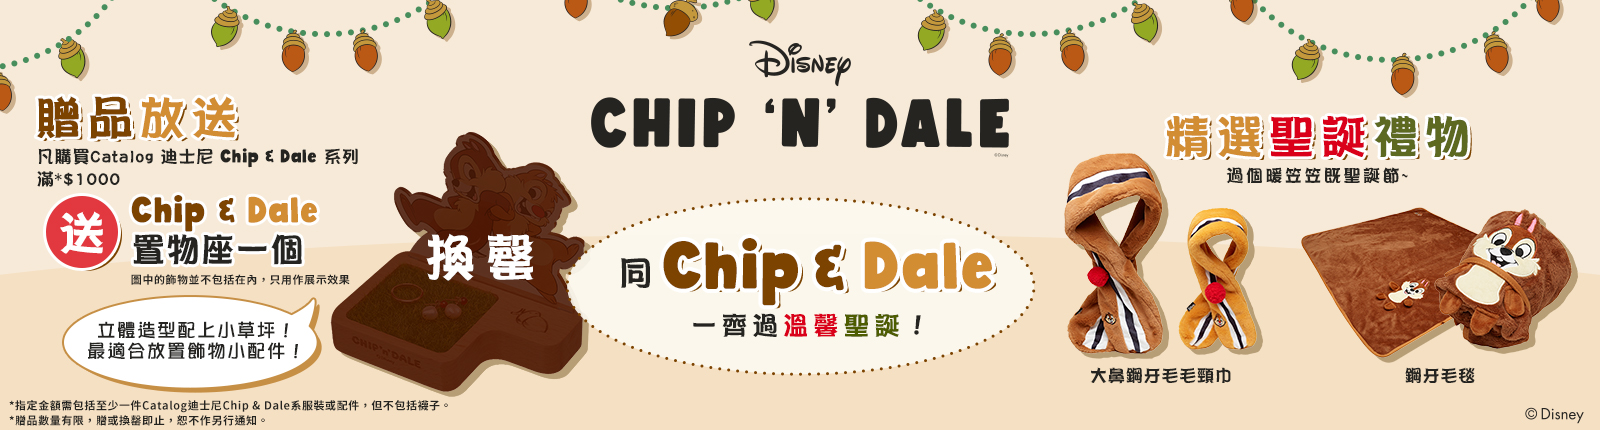 Catalog迪士尼Chip&Dale系列